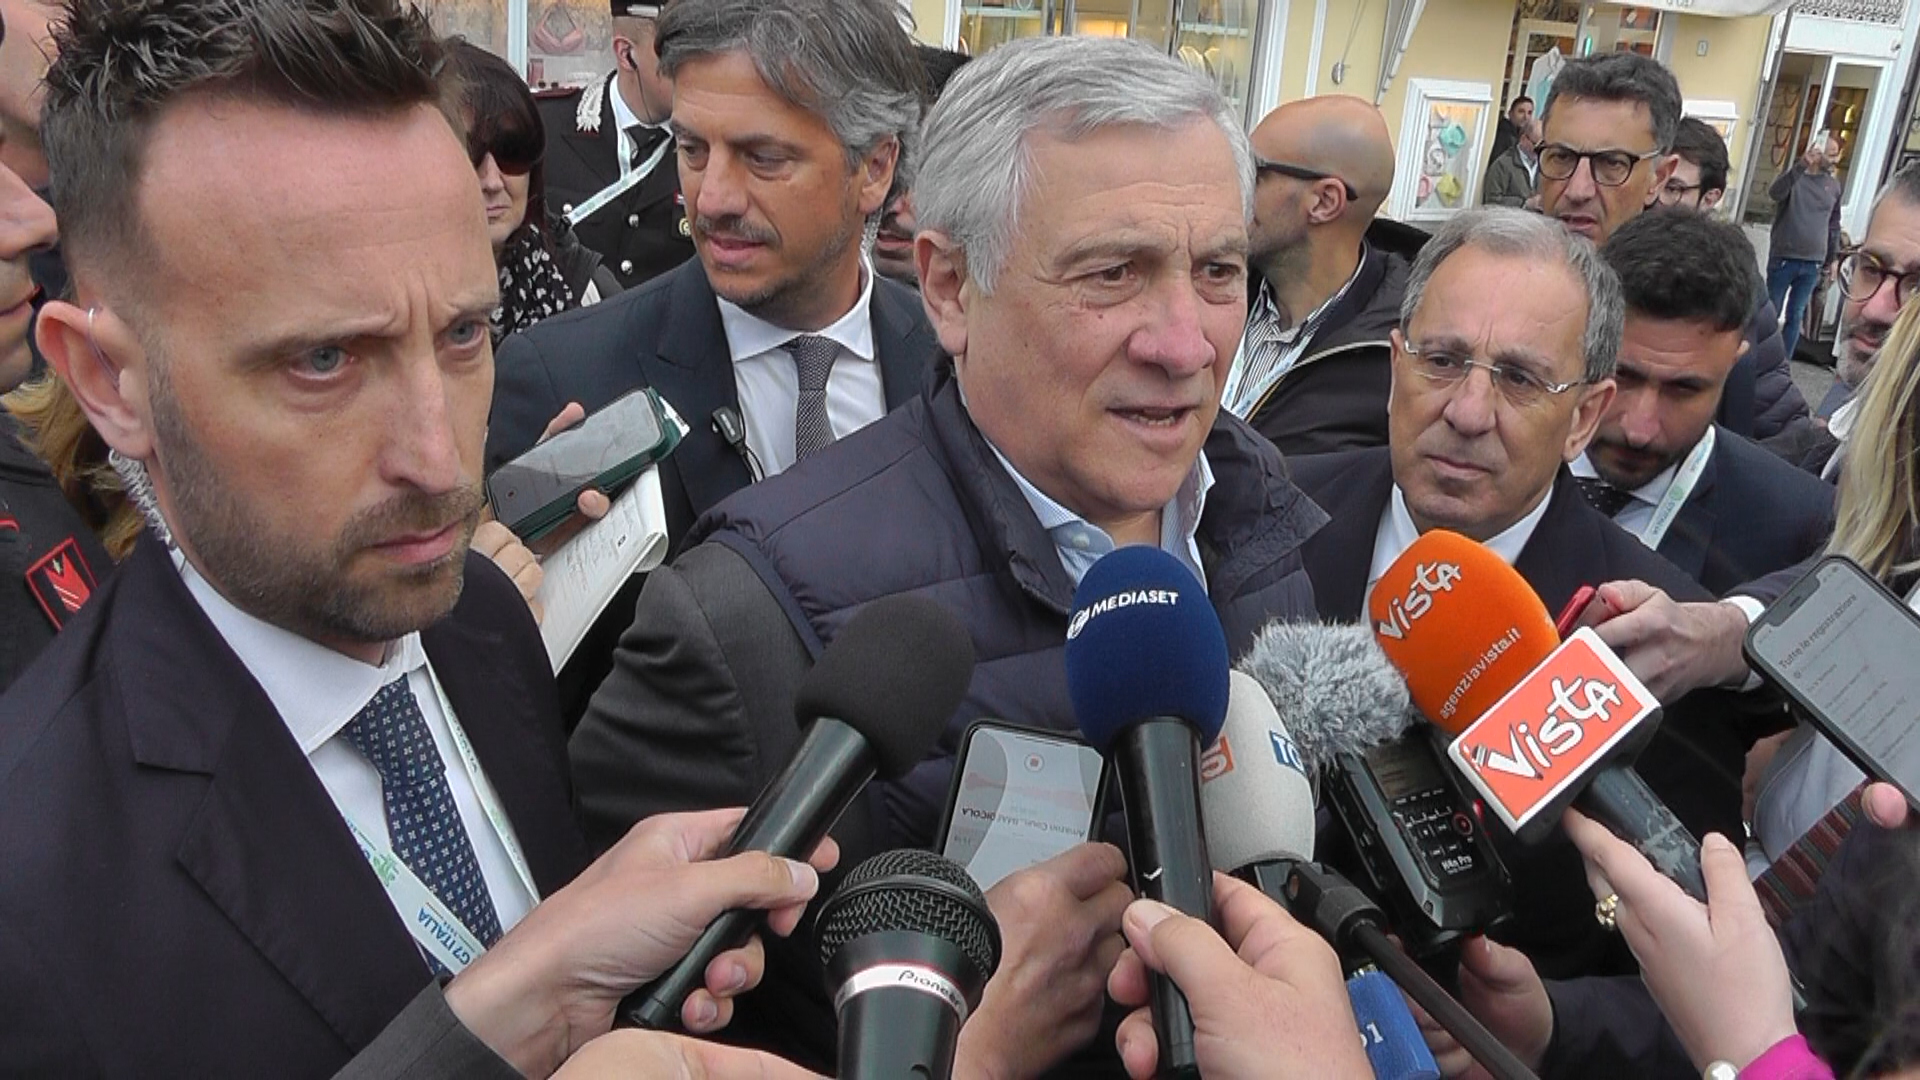 G7 Esteri: selfie e applausi per Tajani in Piazzetta. Intervista al ministro: orgoglioso di aver scelto la “perla” Capri per il vertice (foto e video)